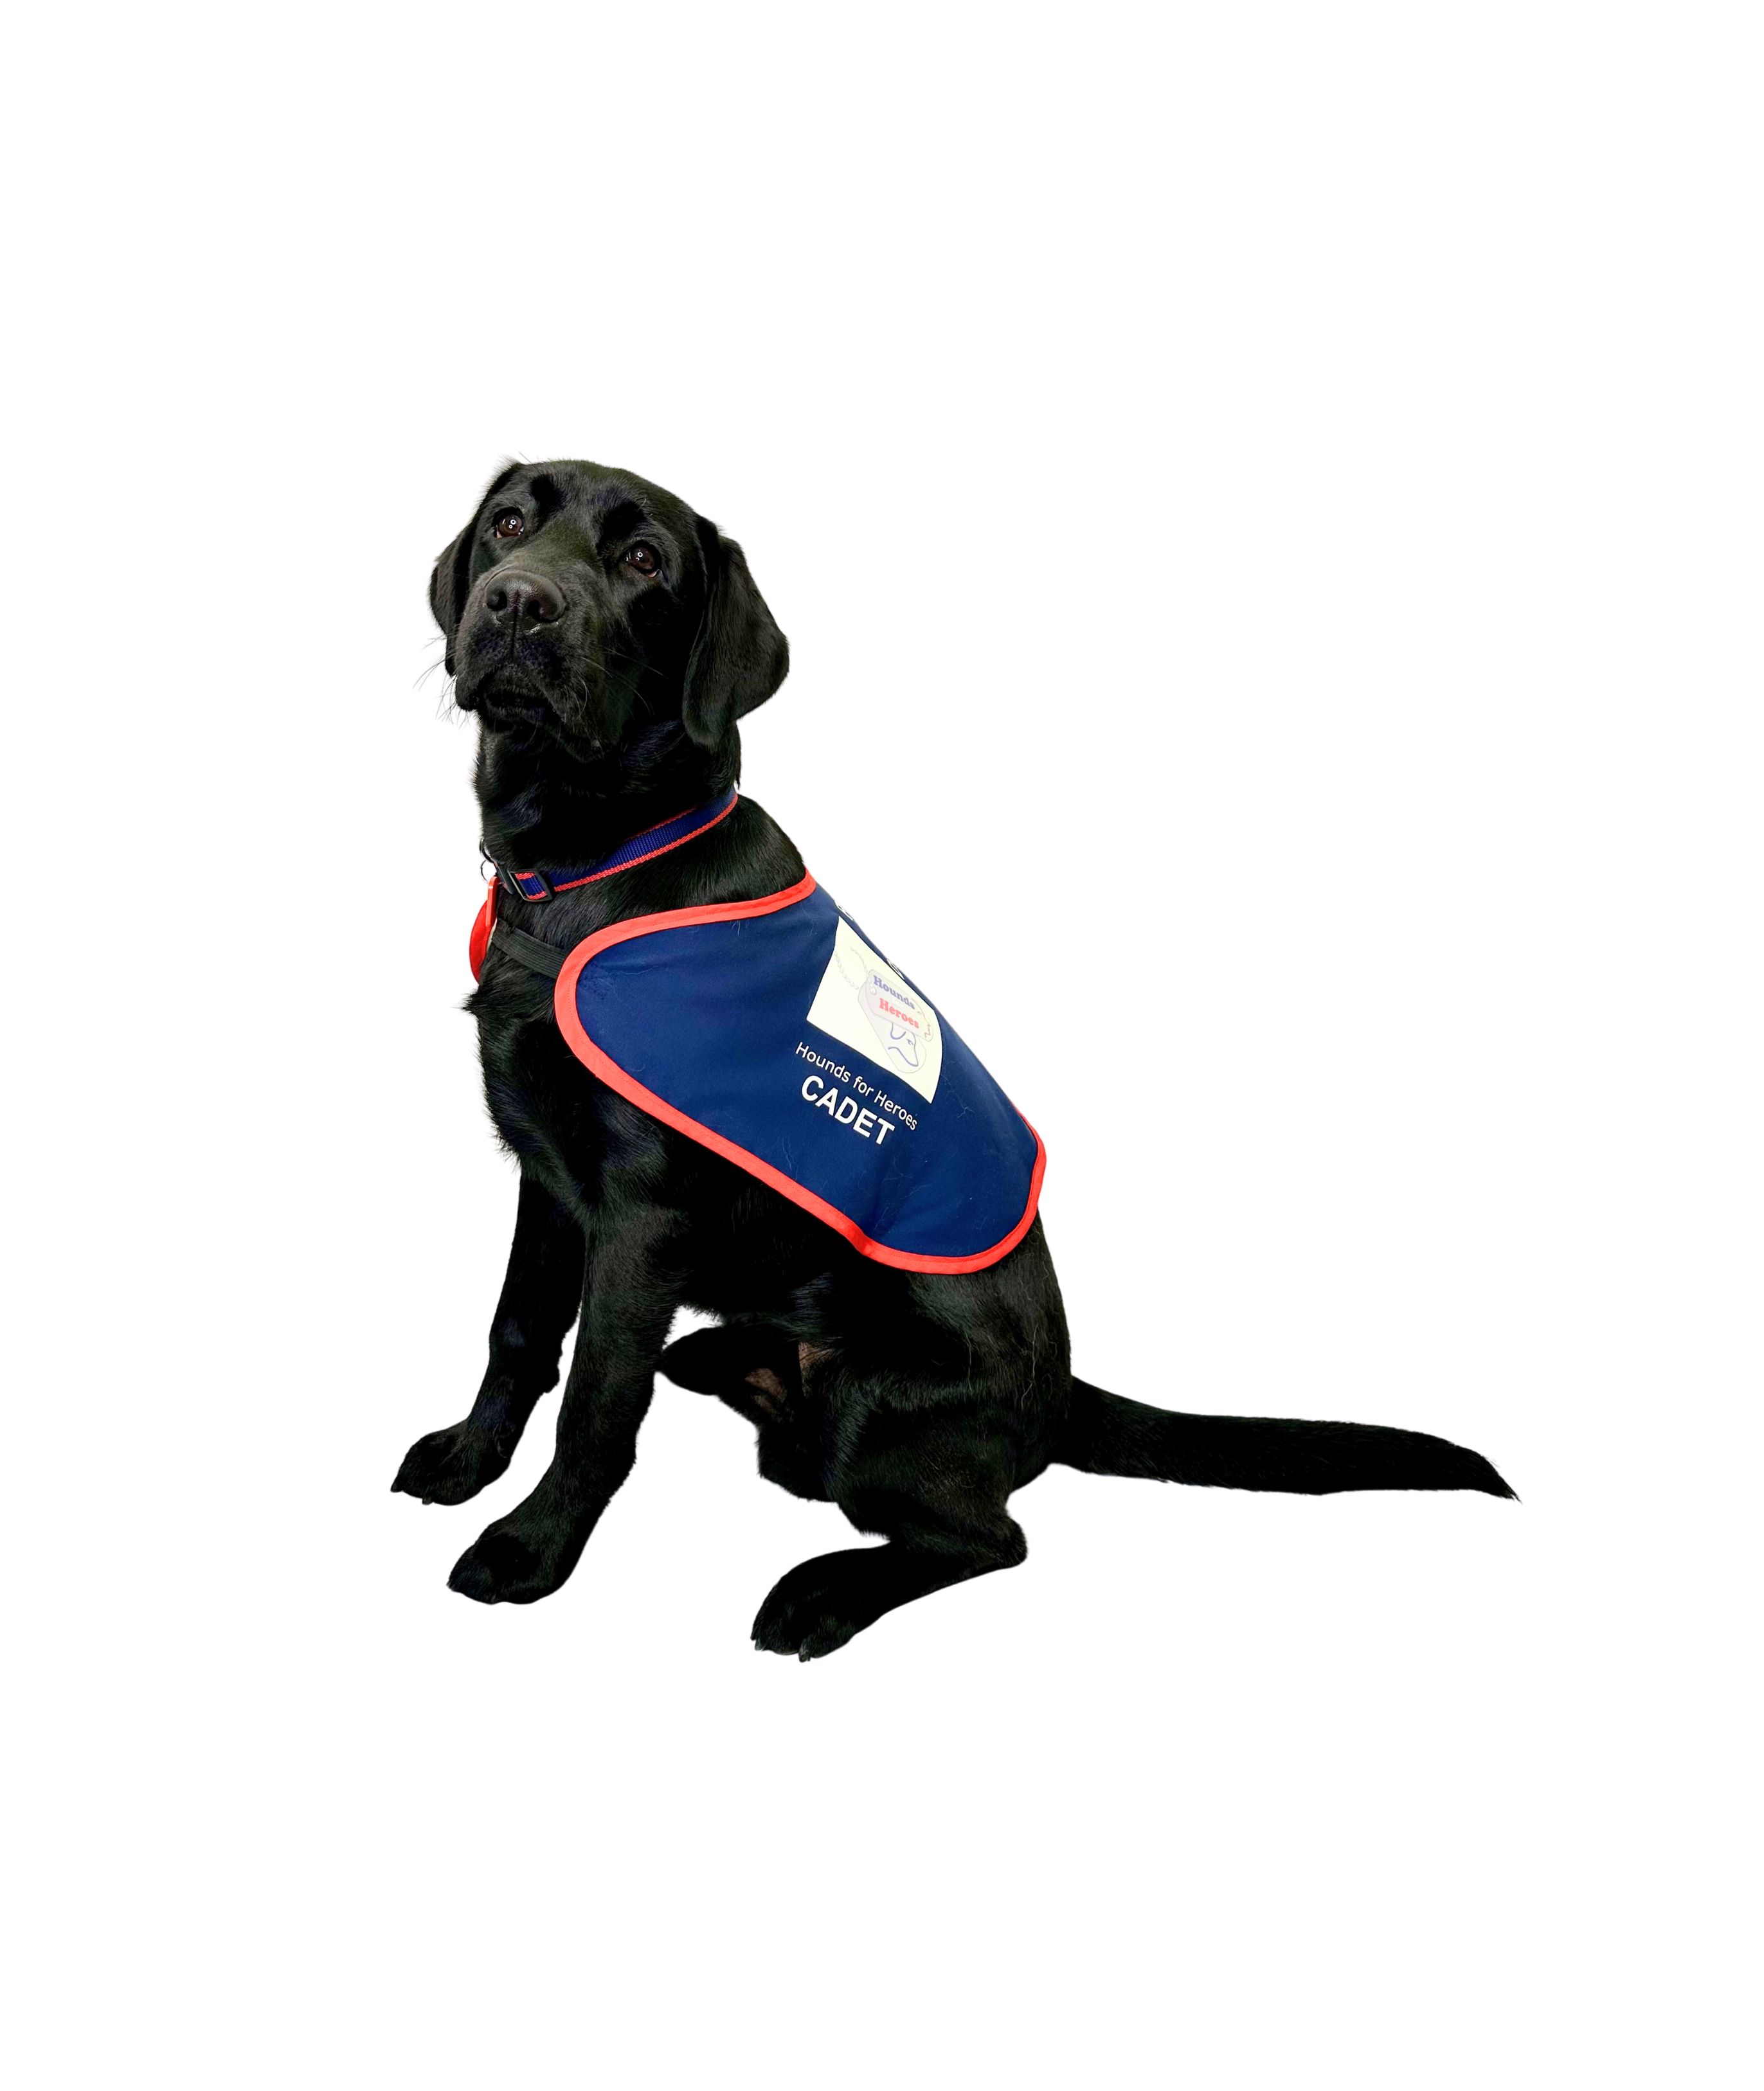 Black Labrador sat wearing an assistance dog jacket